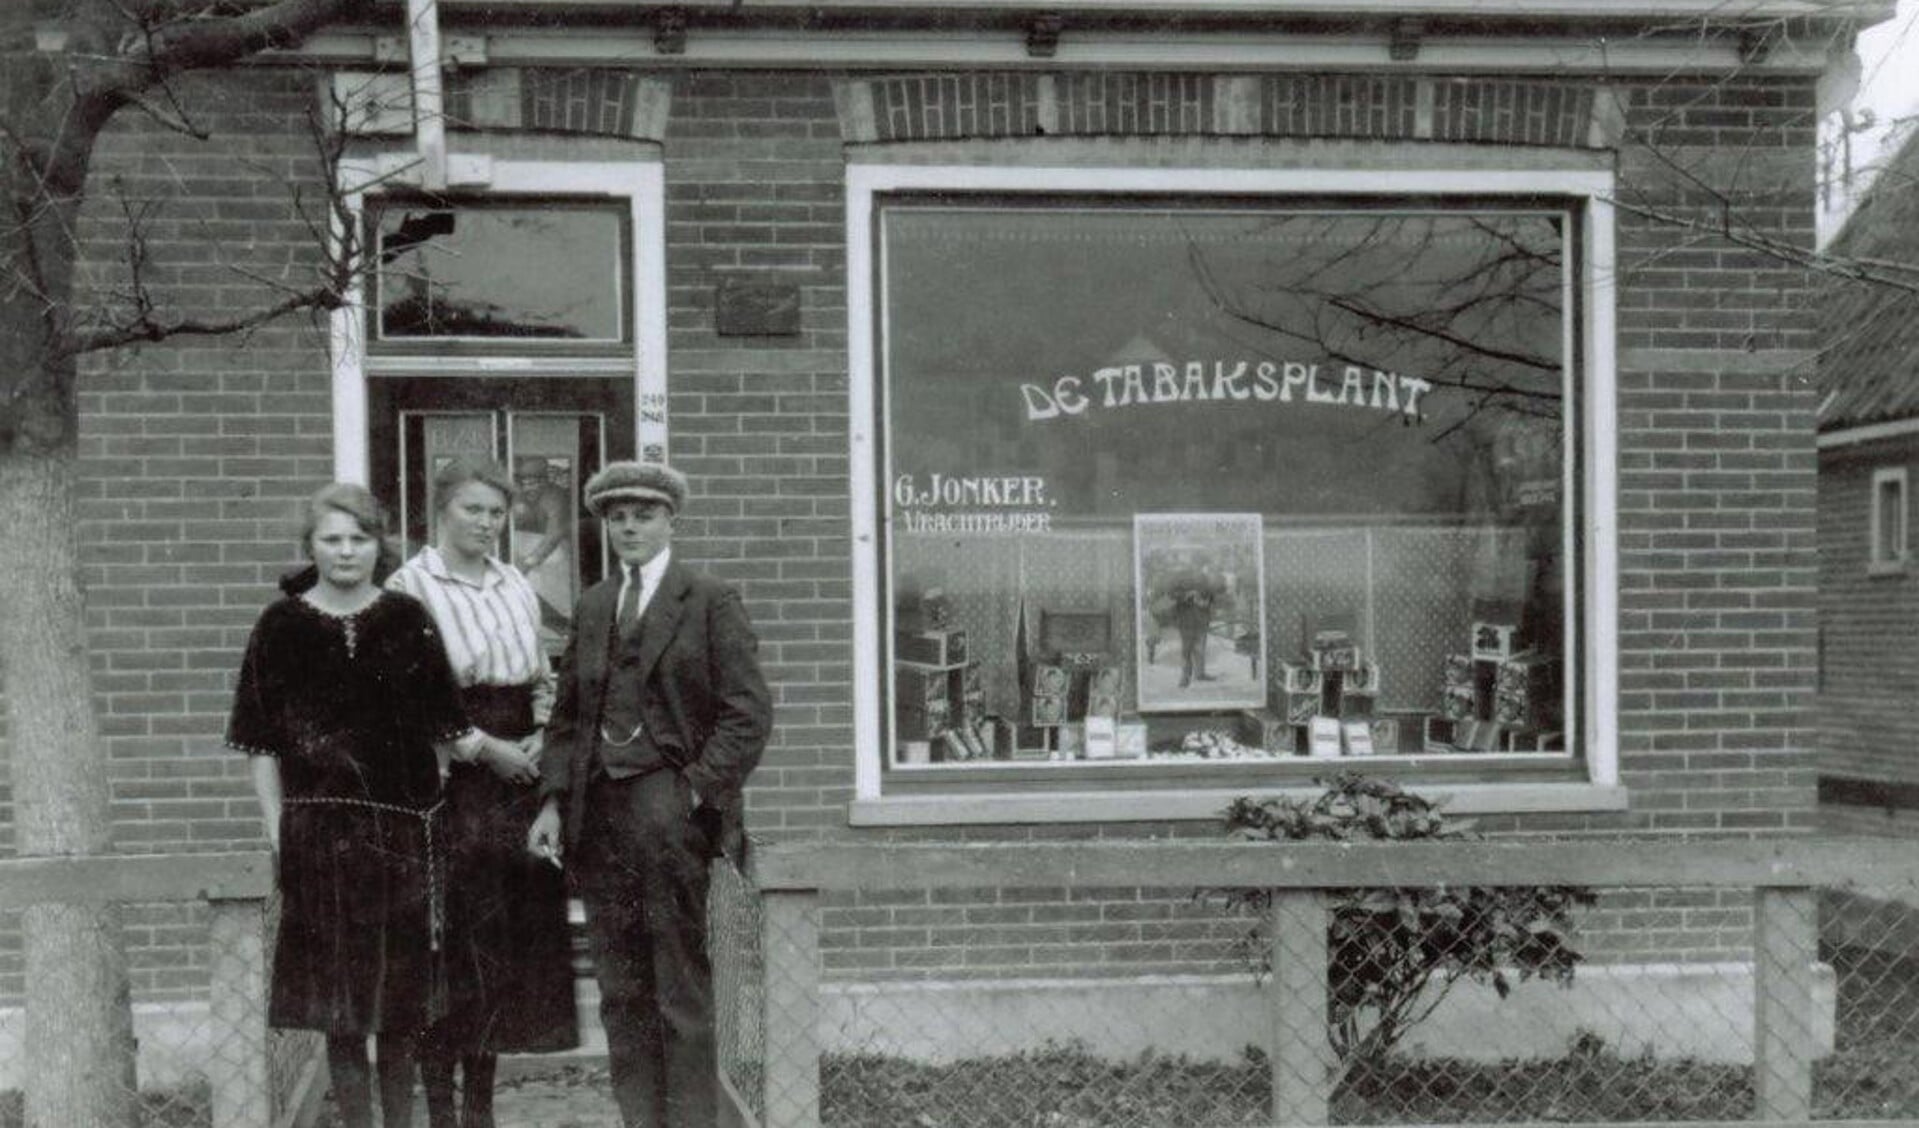 Gert Jonker begon omstreeks 1916 op Bovenweg154 een tabaks- en sigarenwinkeltje en een transportbedrijf. Zijn zoon Jan nam het transportbedrijf over en breidde dit uit tot Transportbedrijf J. Jonker en zonen. In de jaren ’60 begon Piet Heemskerk hier snackbar , Het Haantje'. (Foto: Historisch